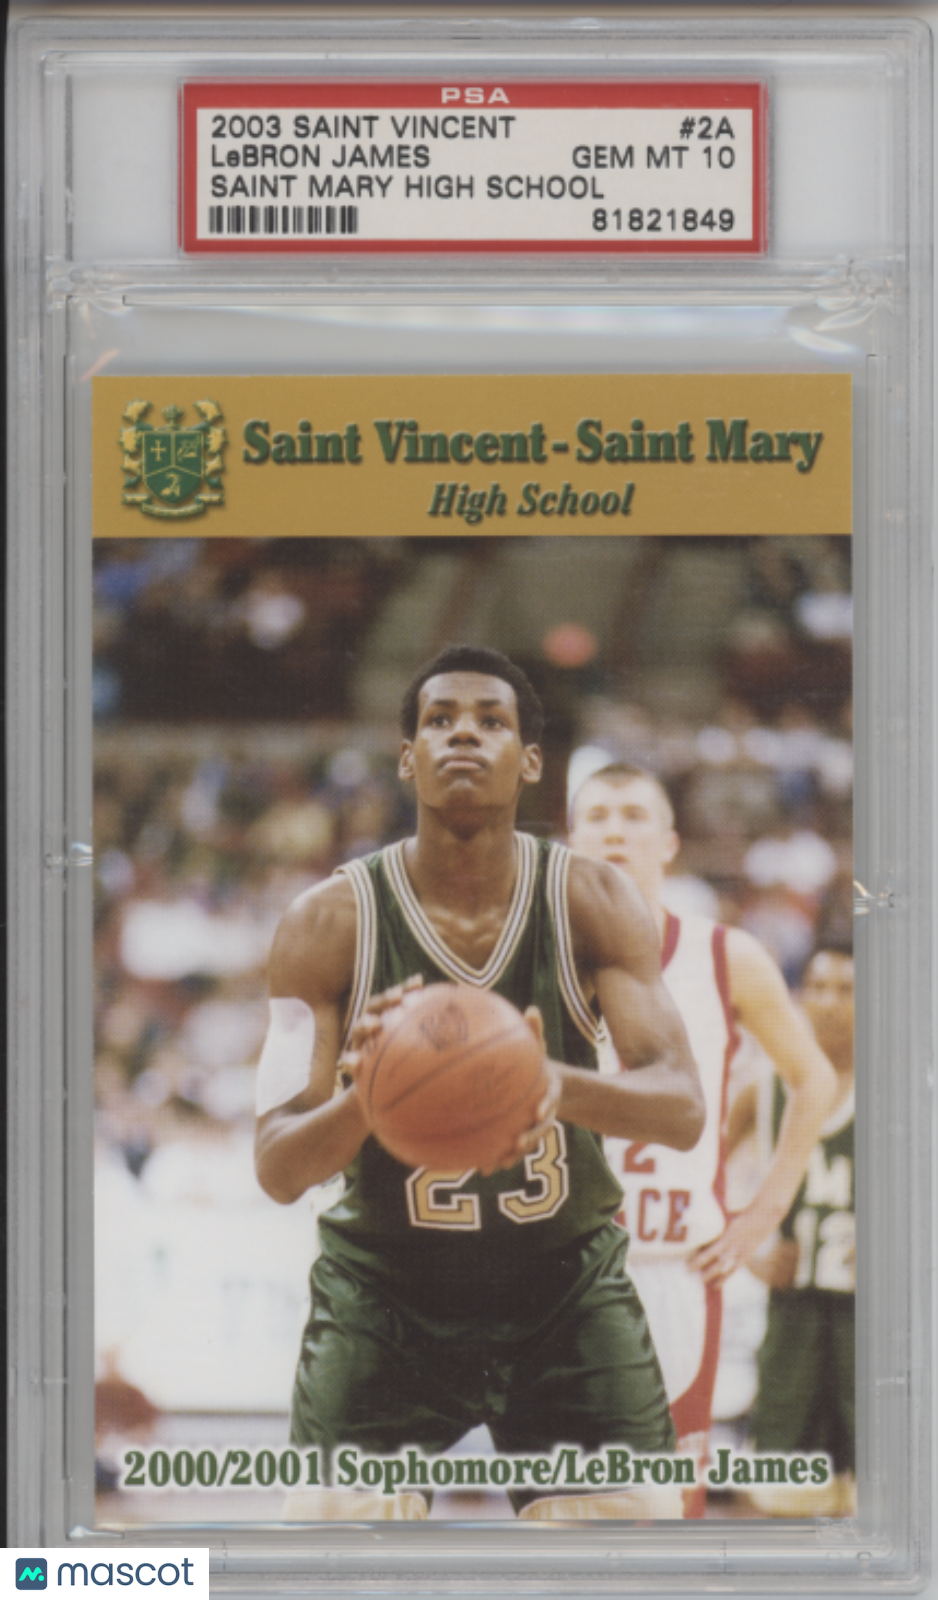 2003 Saint Vincent Saint Mary High School LeBron James #2A PSA 10